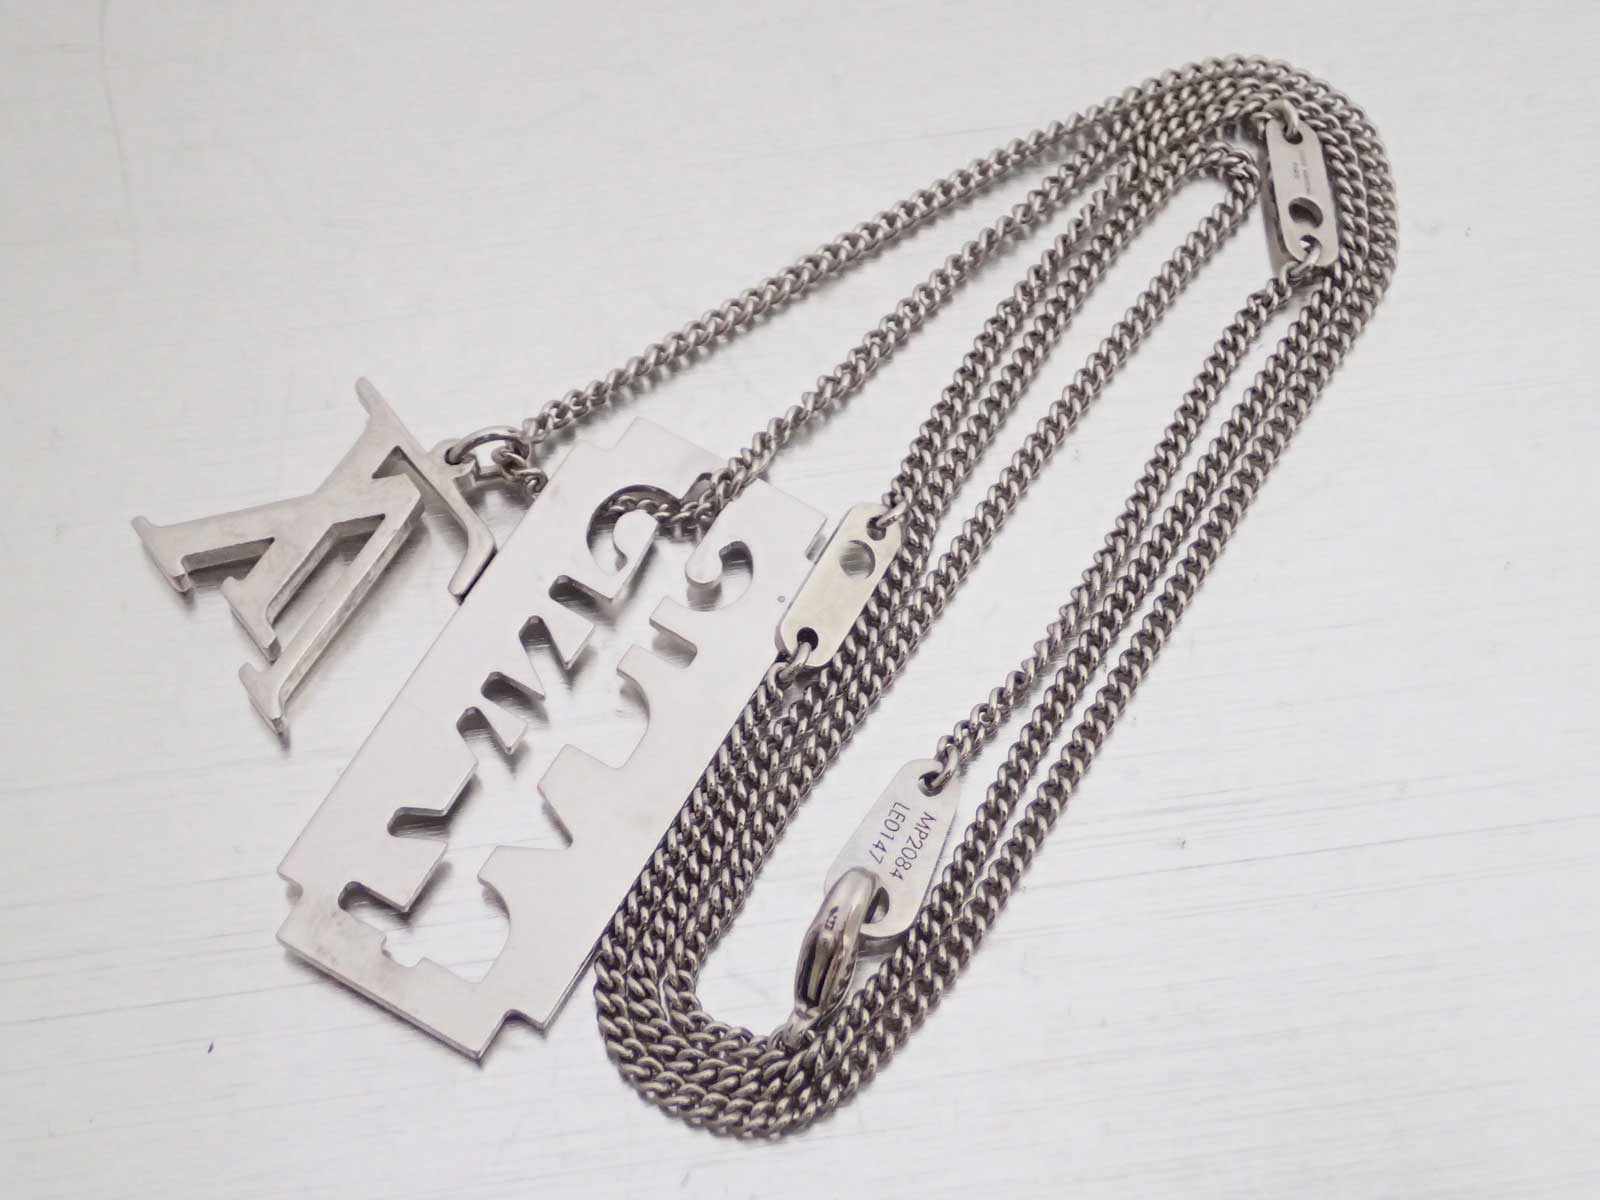 Auth Louis Vuitton Collier Charm Form Gentlemen Necklace Silvertone - e43139 | eBay